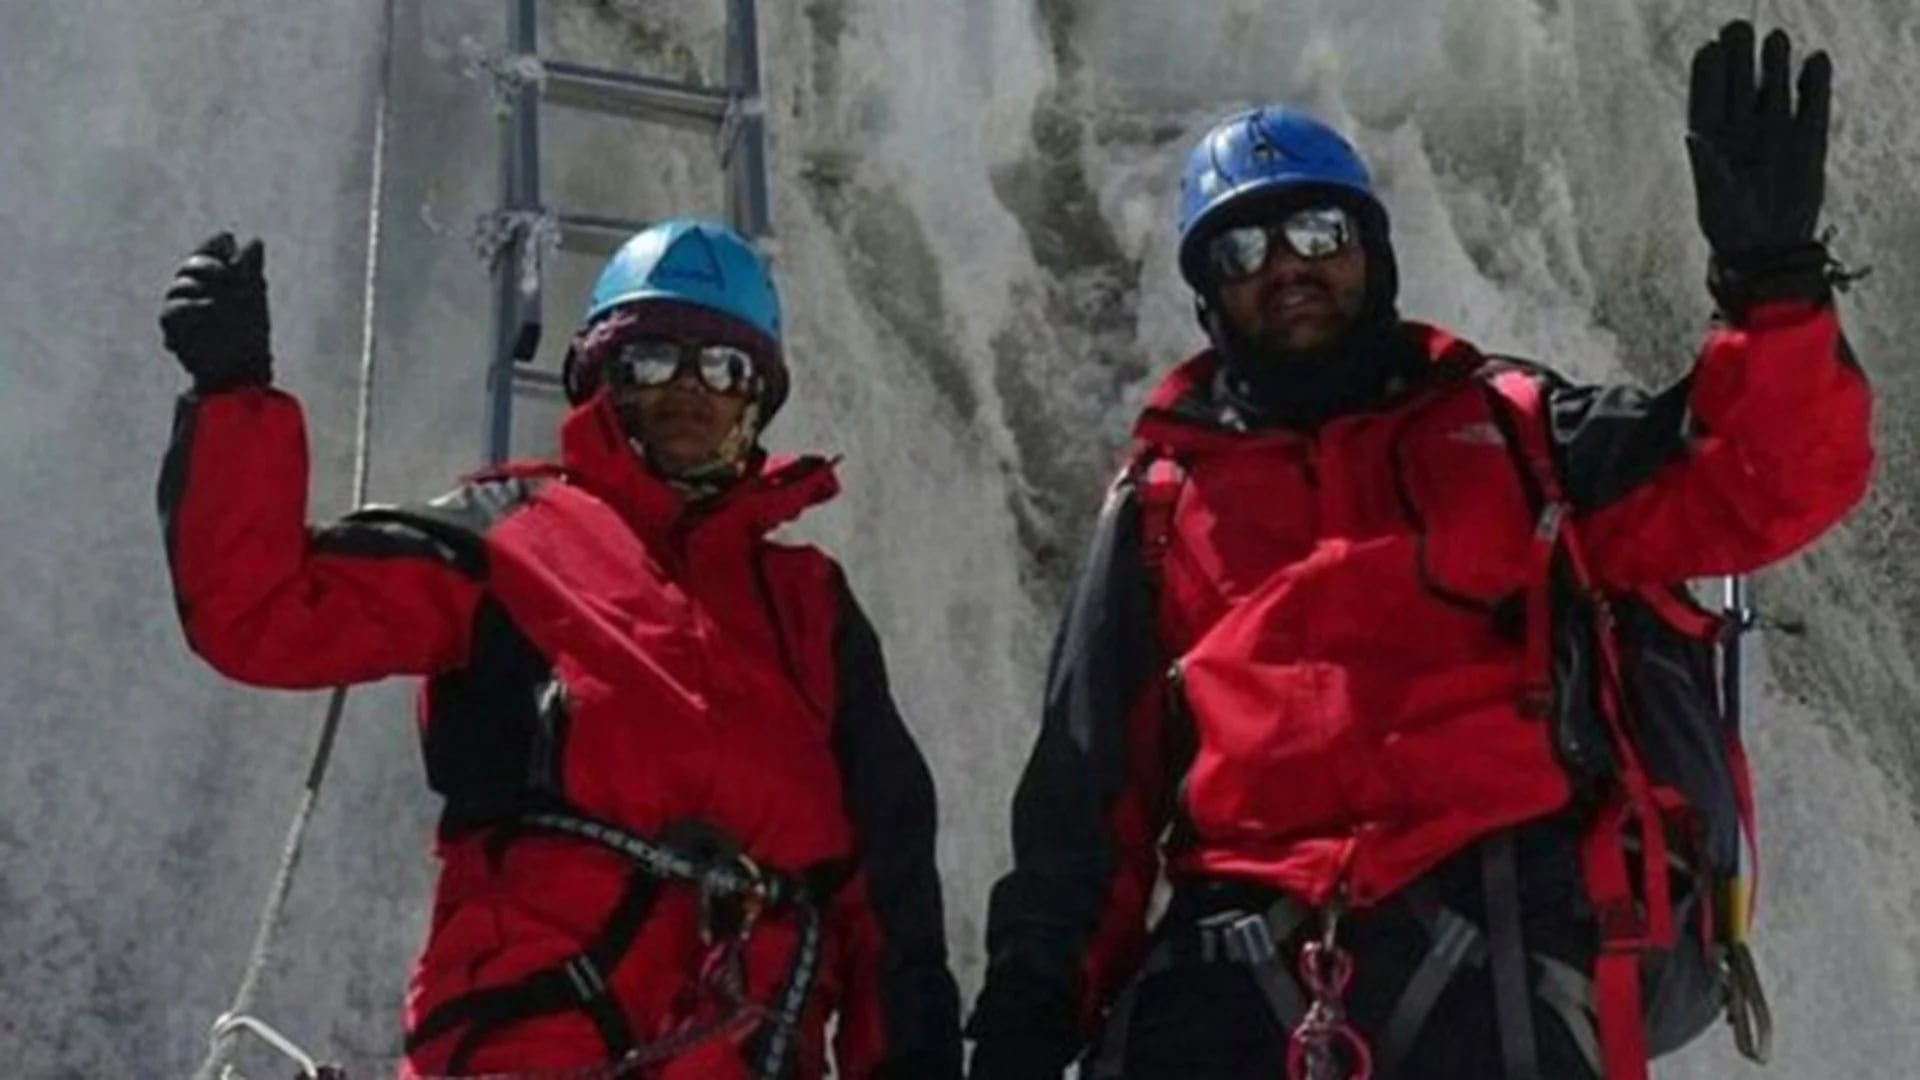 Una imagen de los Rathod durante su ascenso al Everest. Están vestidos completamente diferente del momento en que hicieron cumbre, un dato no menor para los expertos montañistas